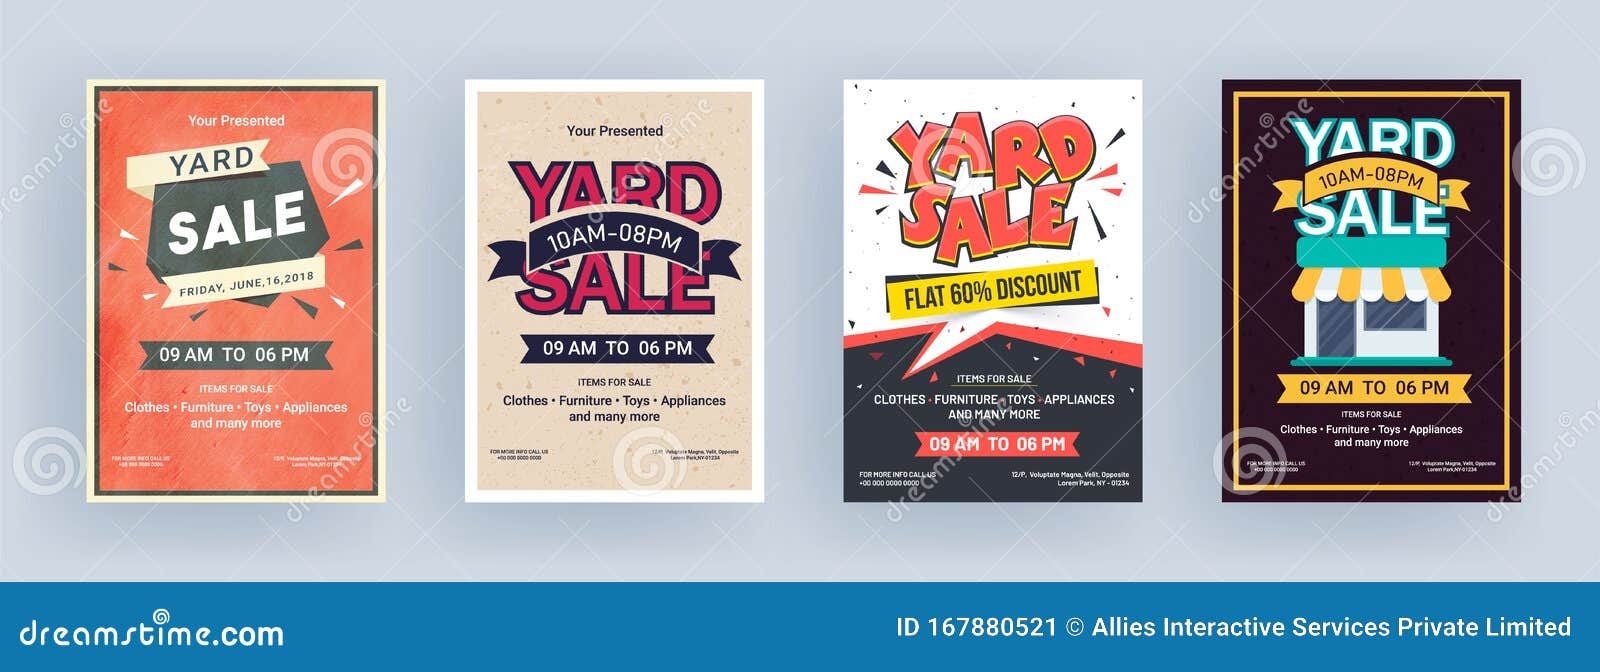 Vintage Yard Sale Flyer or Template Design. Stock Illustration Inside Free Yard Sale Flyer Template